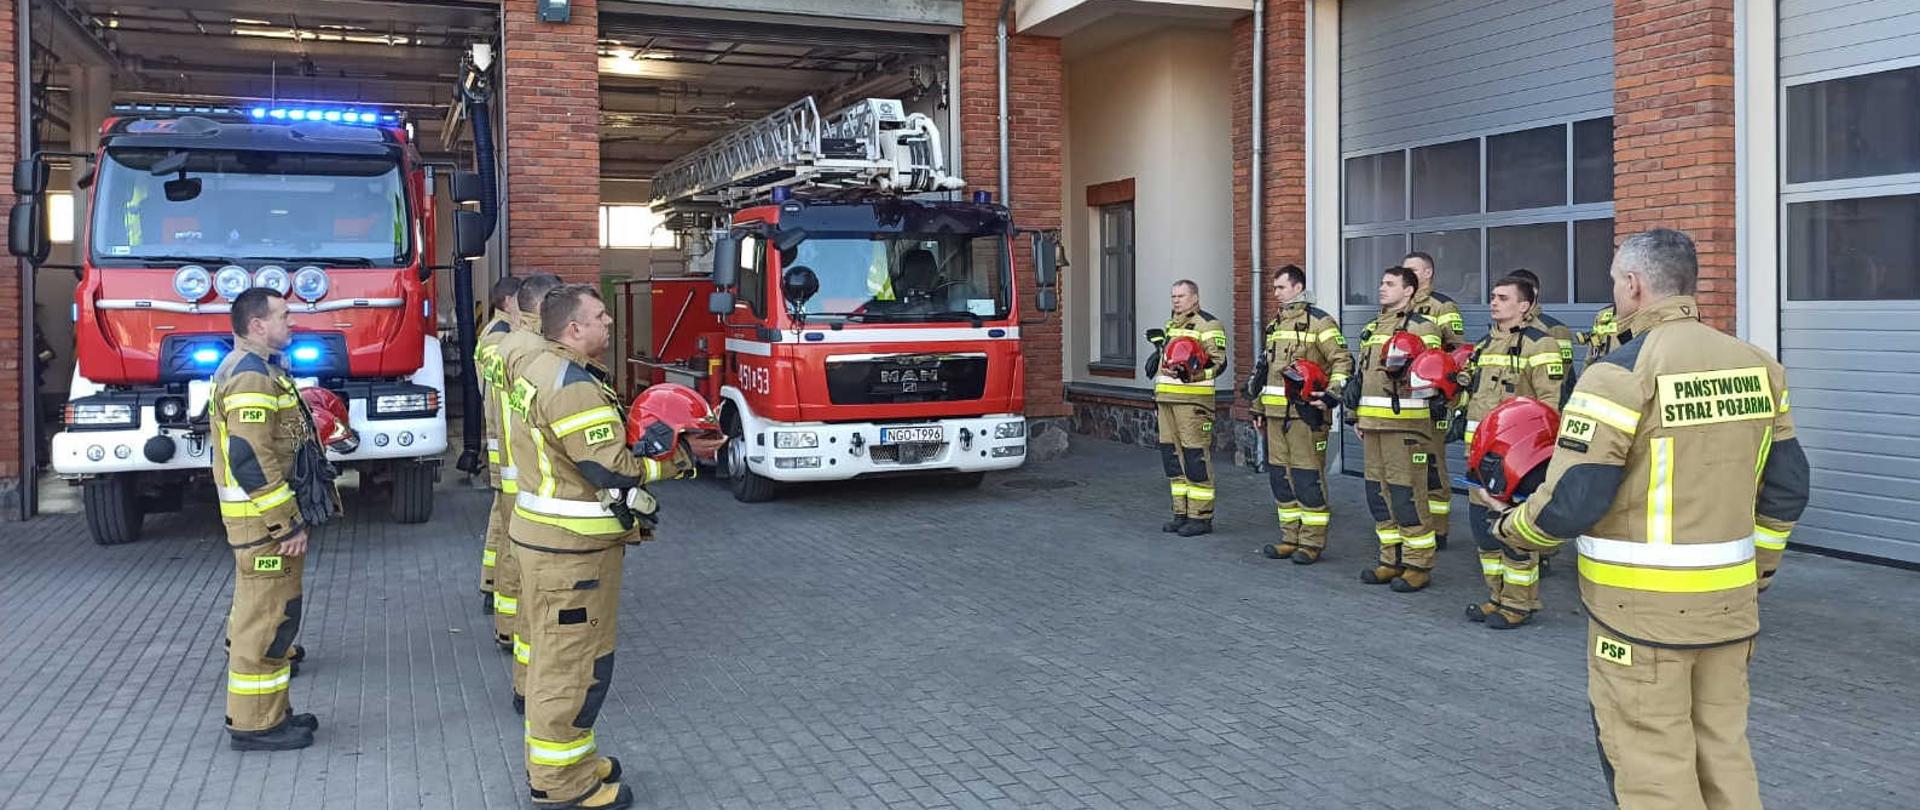 Strażacy Państwowej Straży Pożarnej powiatu gołdapskiego oddają honory bohaterskim strażakom z Ukrainy